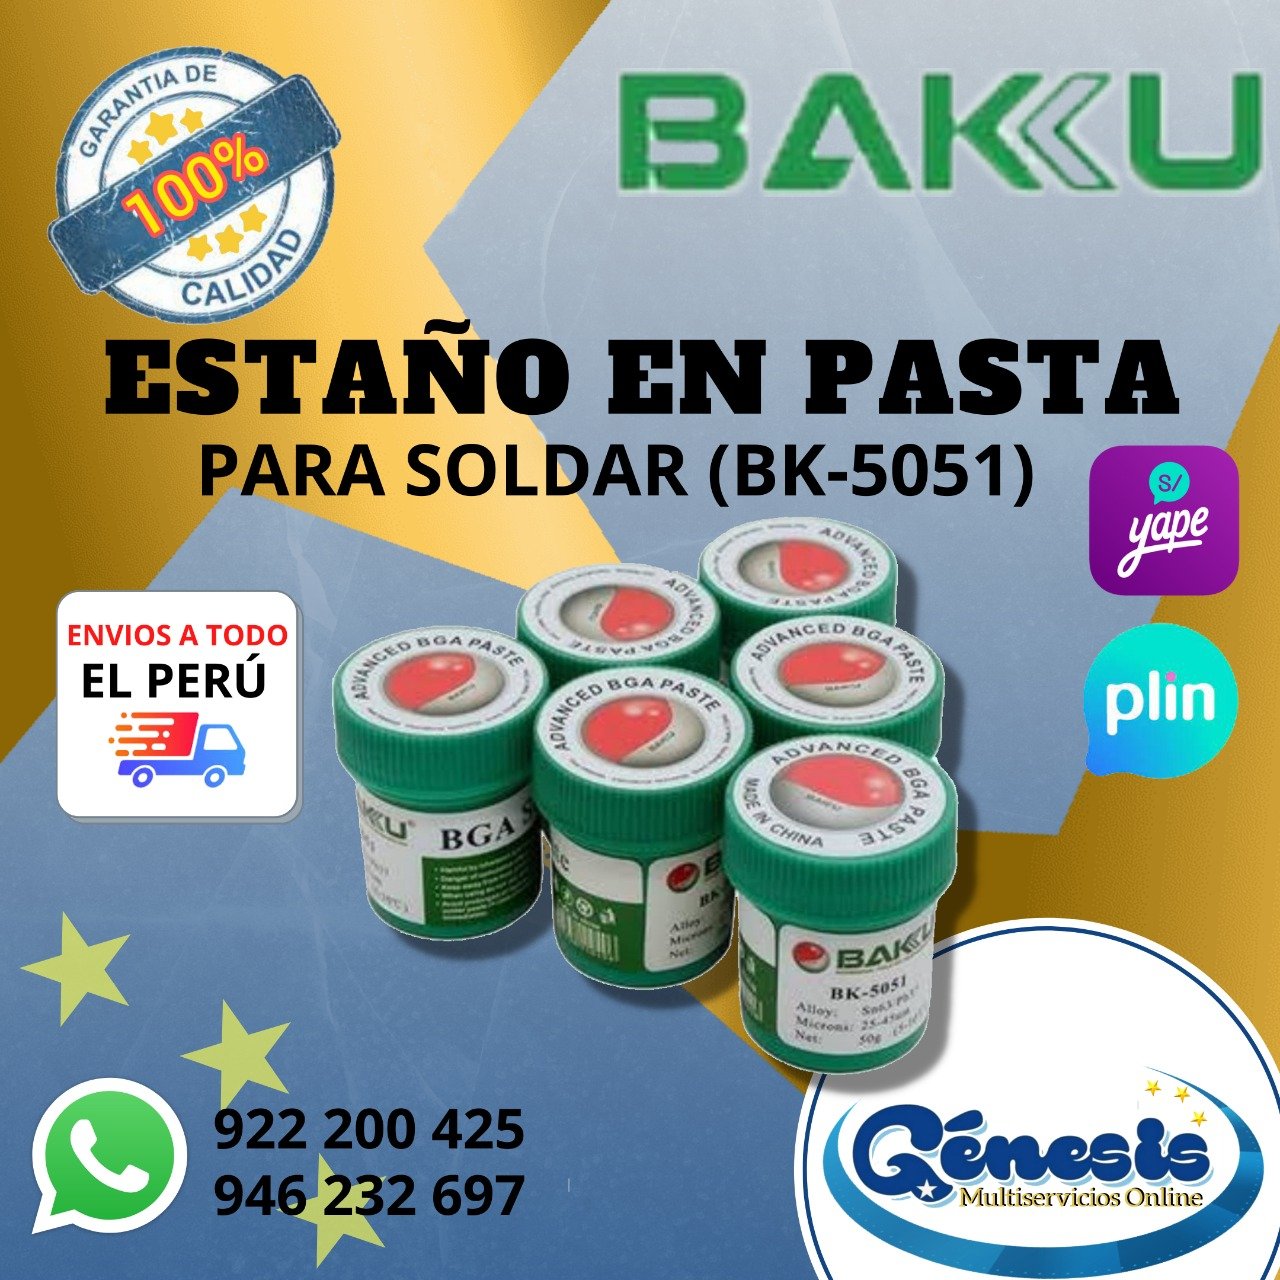 Estaño En Pasta para soldar BAKU (BK-5051) – Genesis Multiservicios Online